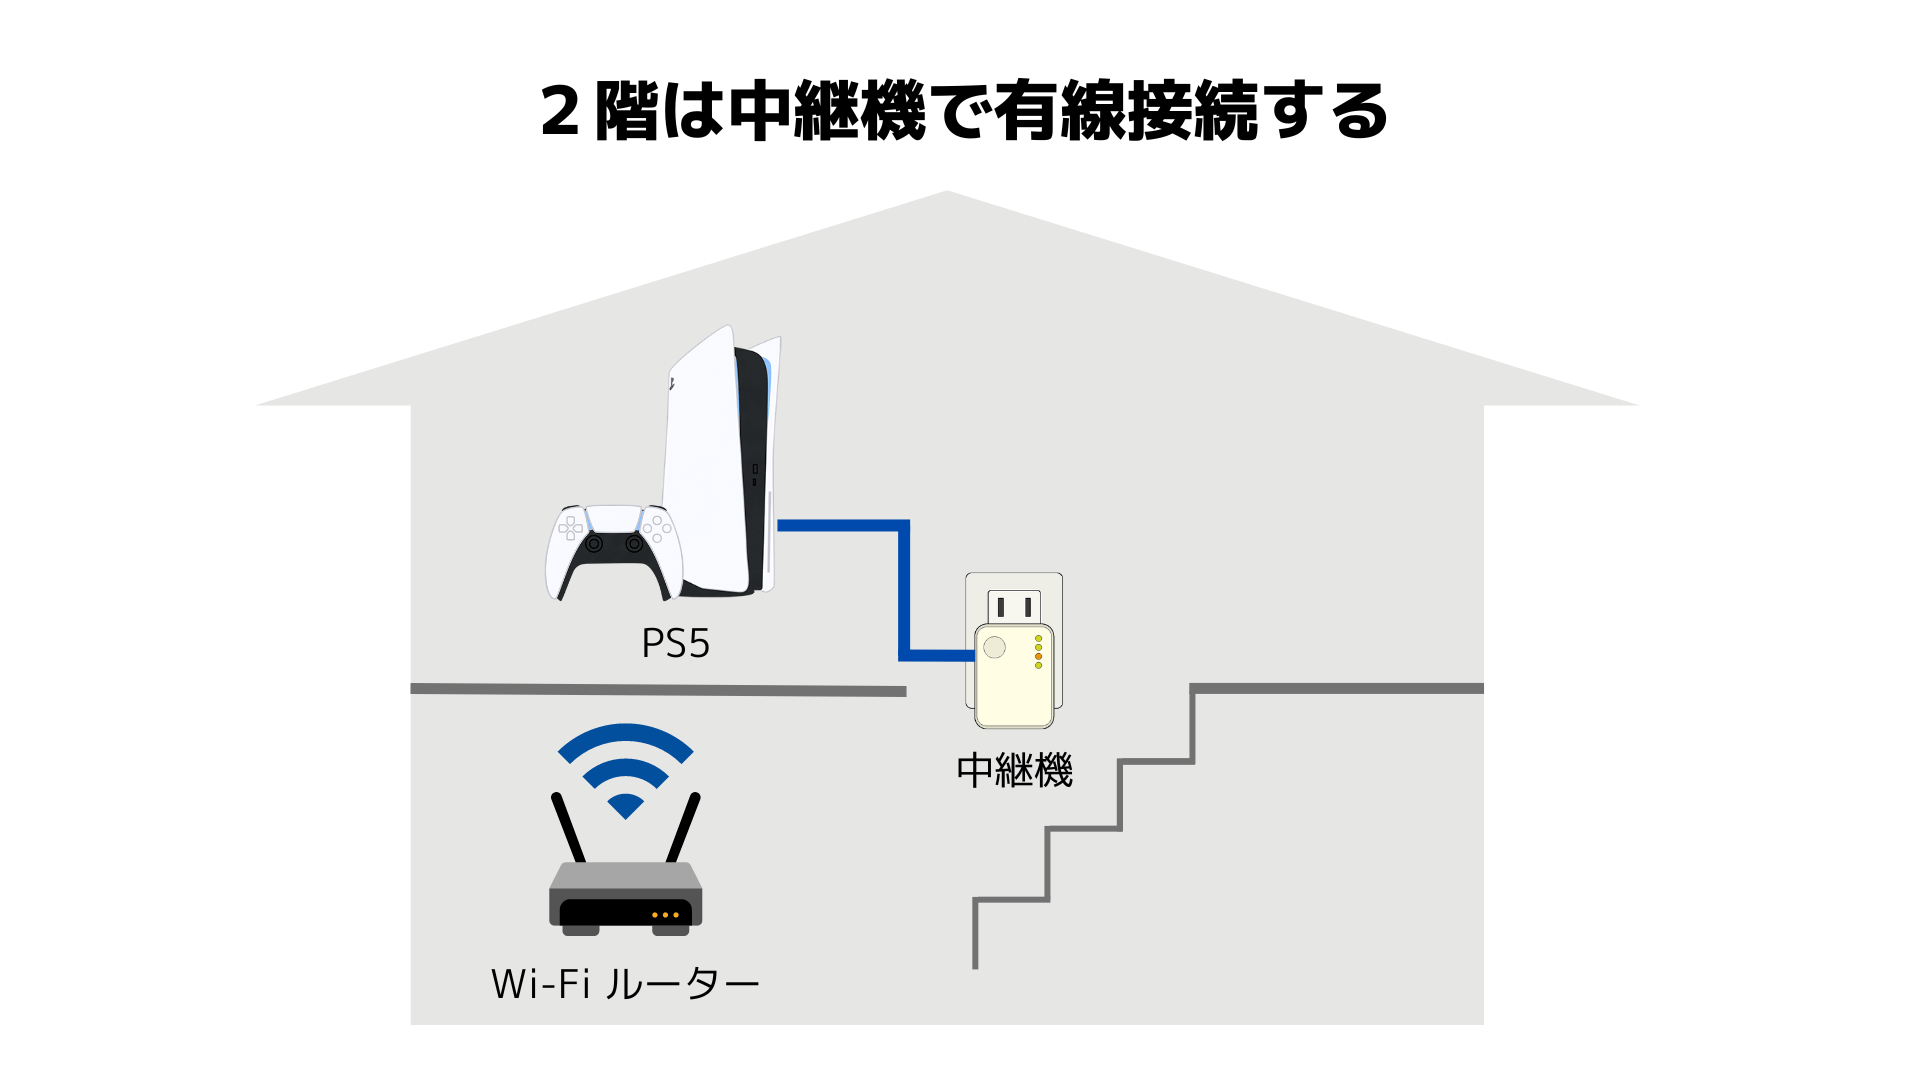 2階にあるPS5をWi-Fi中継機で有線接続するイメージ図